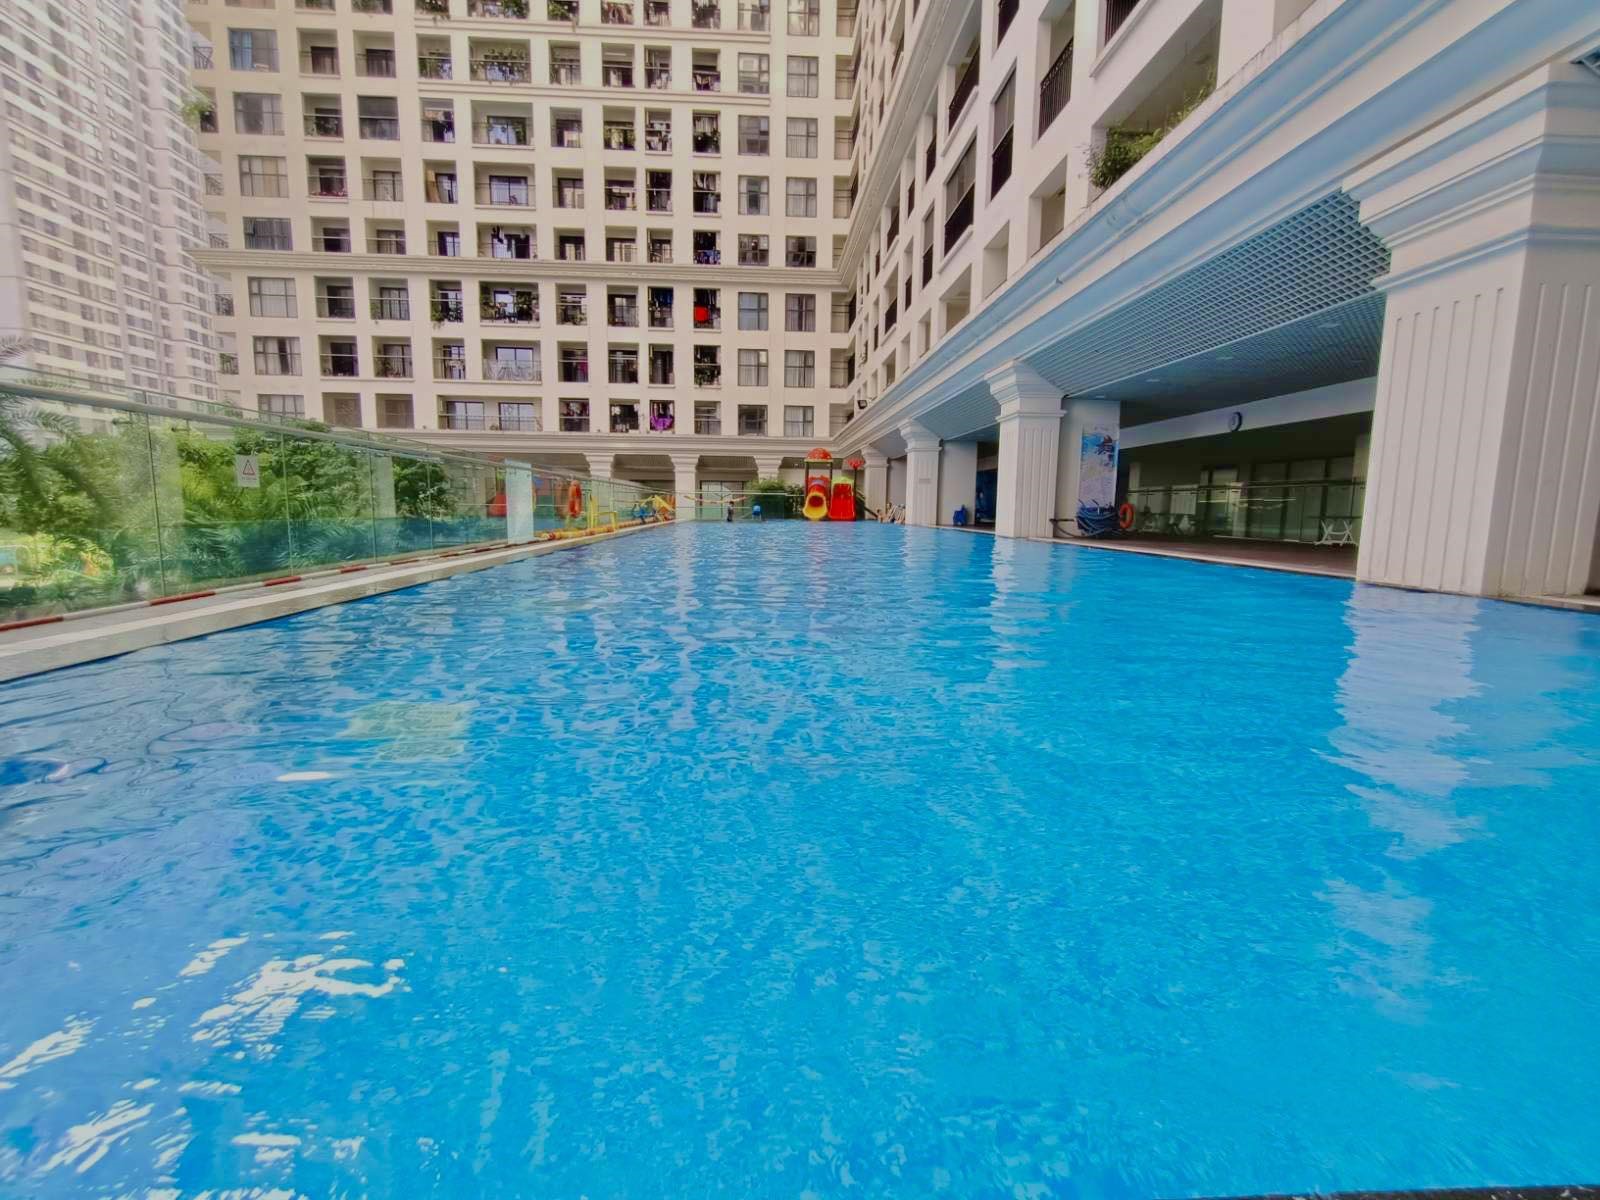 Bể bơi trong xanh là điểm đến được cư dân yêu thích vào những ngày hè.